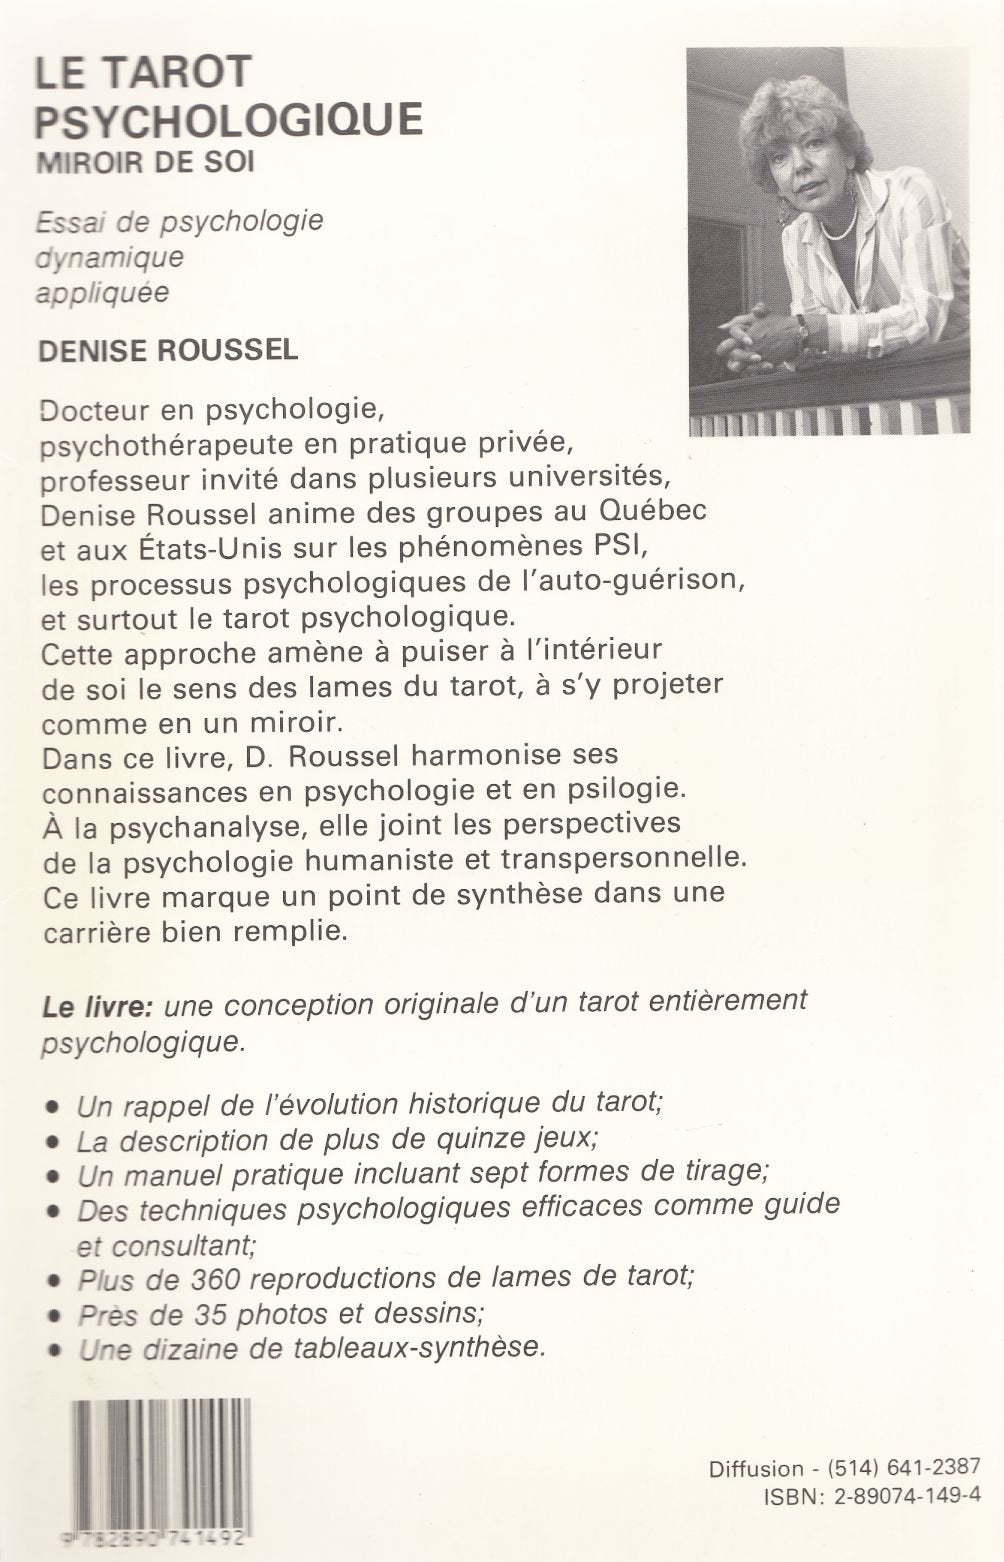 Le tarot psychologique : miroir de soi (Dr Denise Roussel)